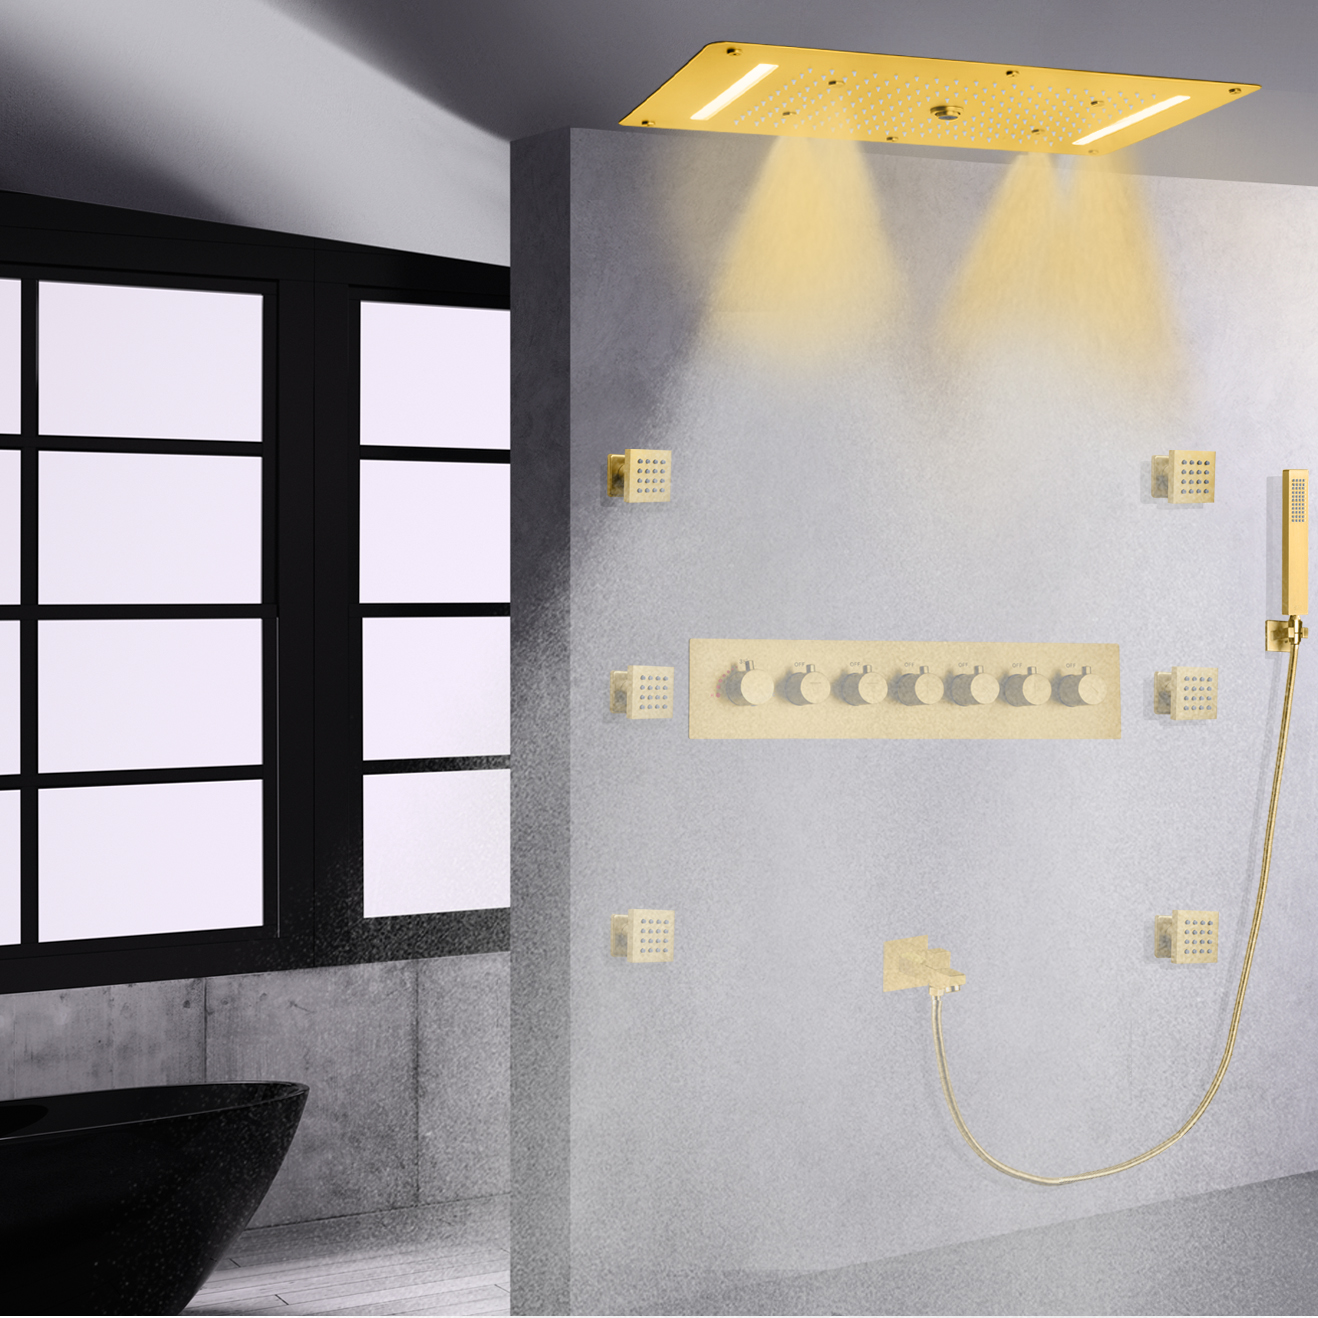 نحى الذهب LED ثرموستاتي النحاس دش صنبور مجموعة الحمام متعددة الوظائف رئيس شلال الأمطار المحمولة